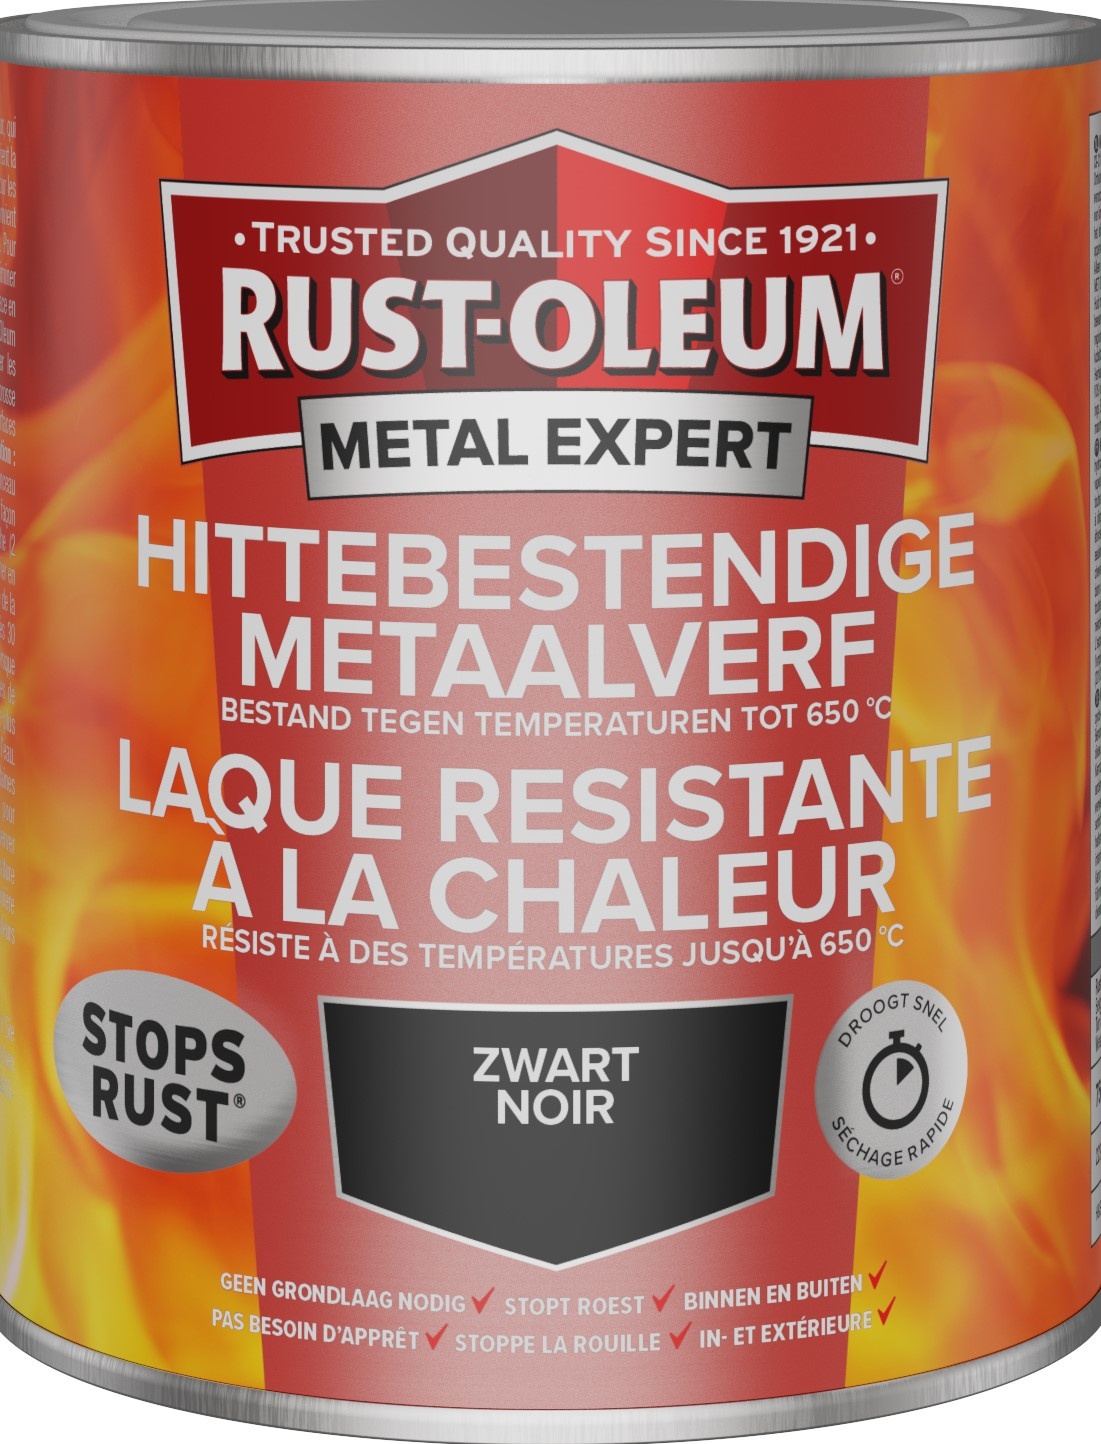 Rust-Oleum Hittebestendige metaalverf 9005 Verfwebwinkel.nl